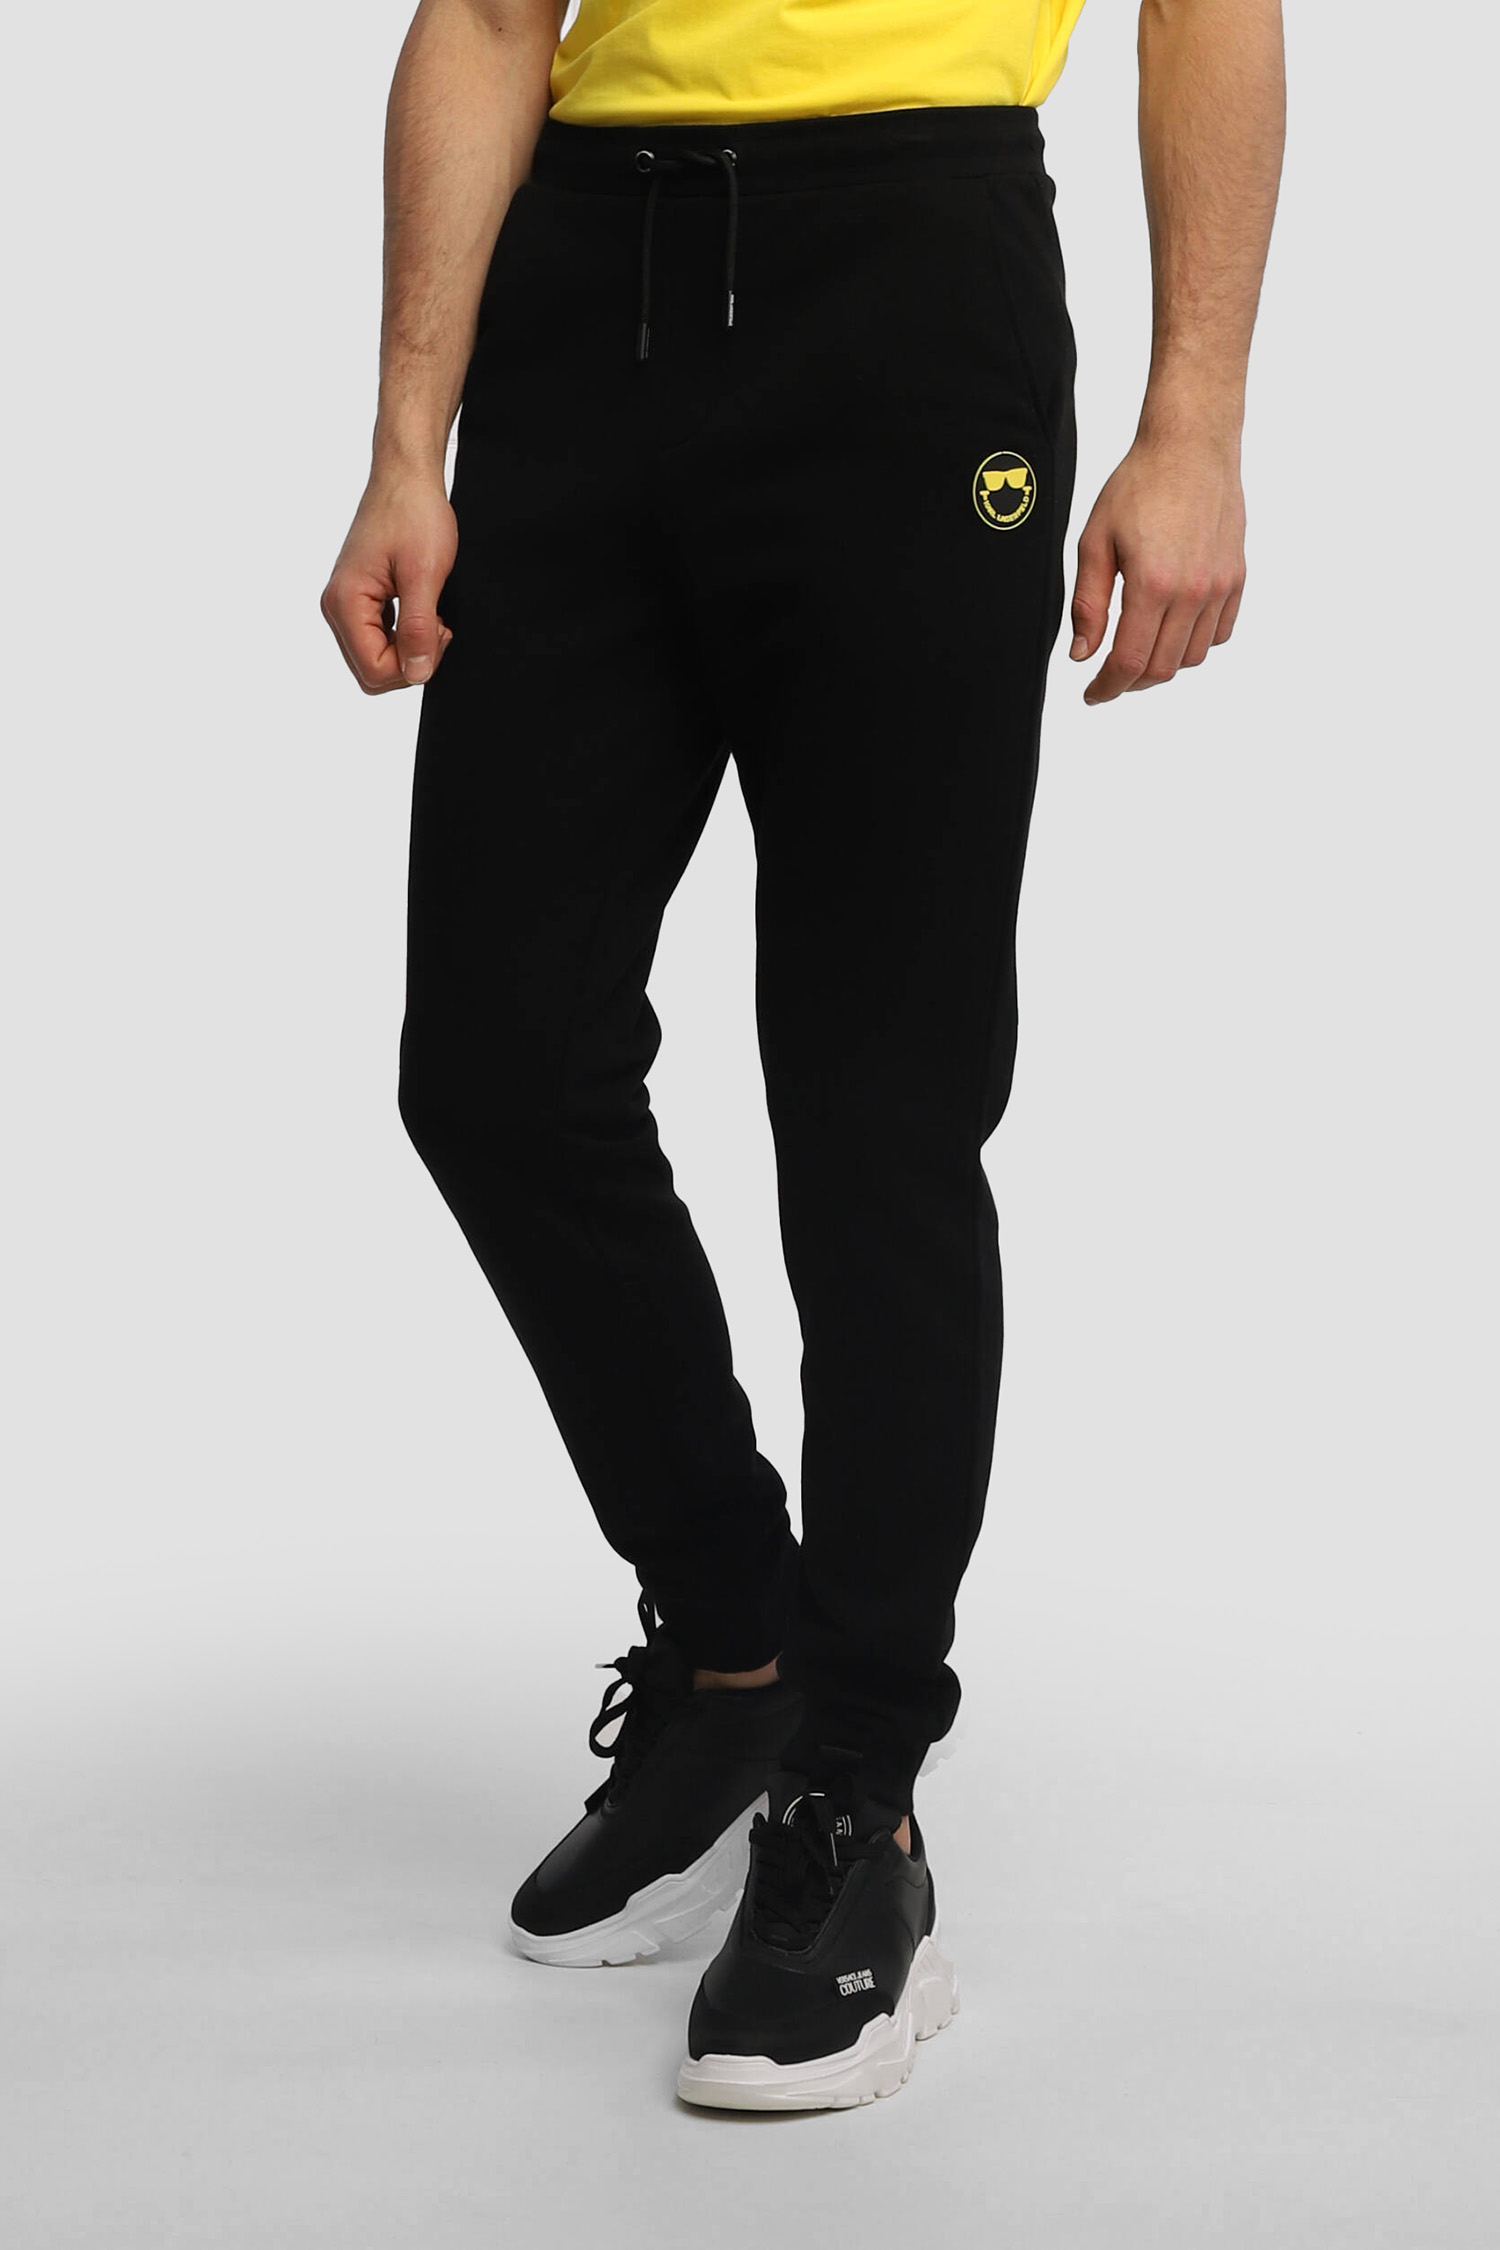 Чоловічі чорні спортивні штани KARL x SmileyWorld® Karl Lagerfeld 521900.705441;990